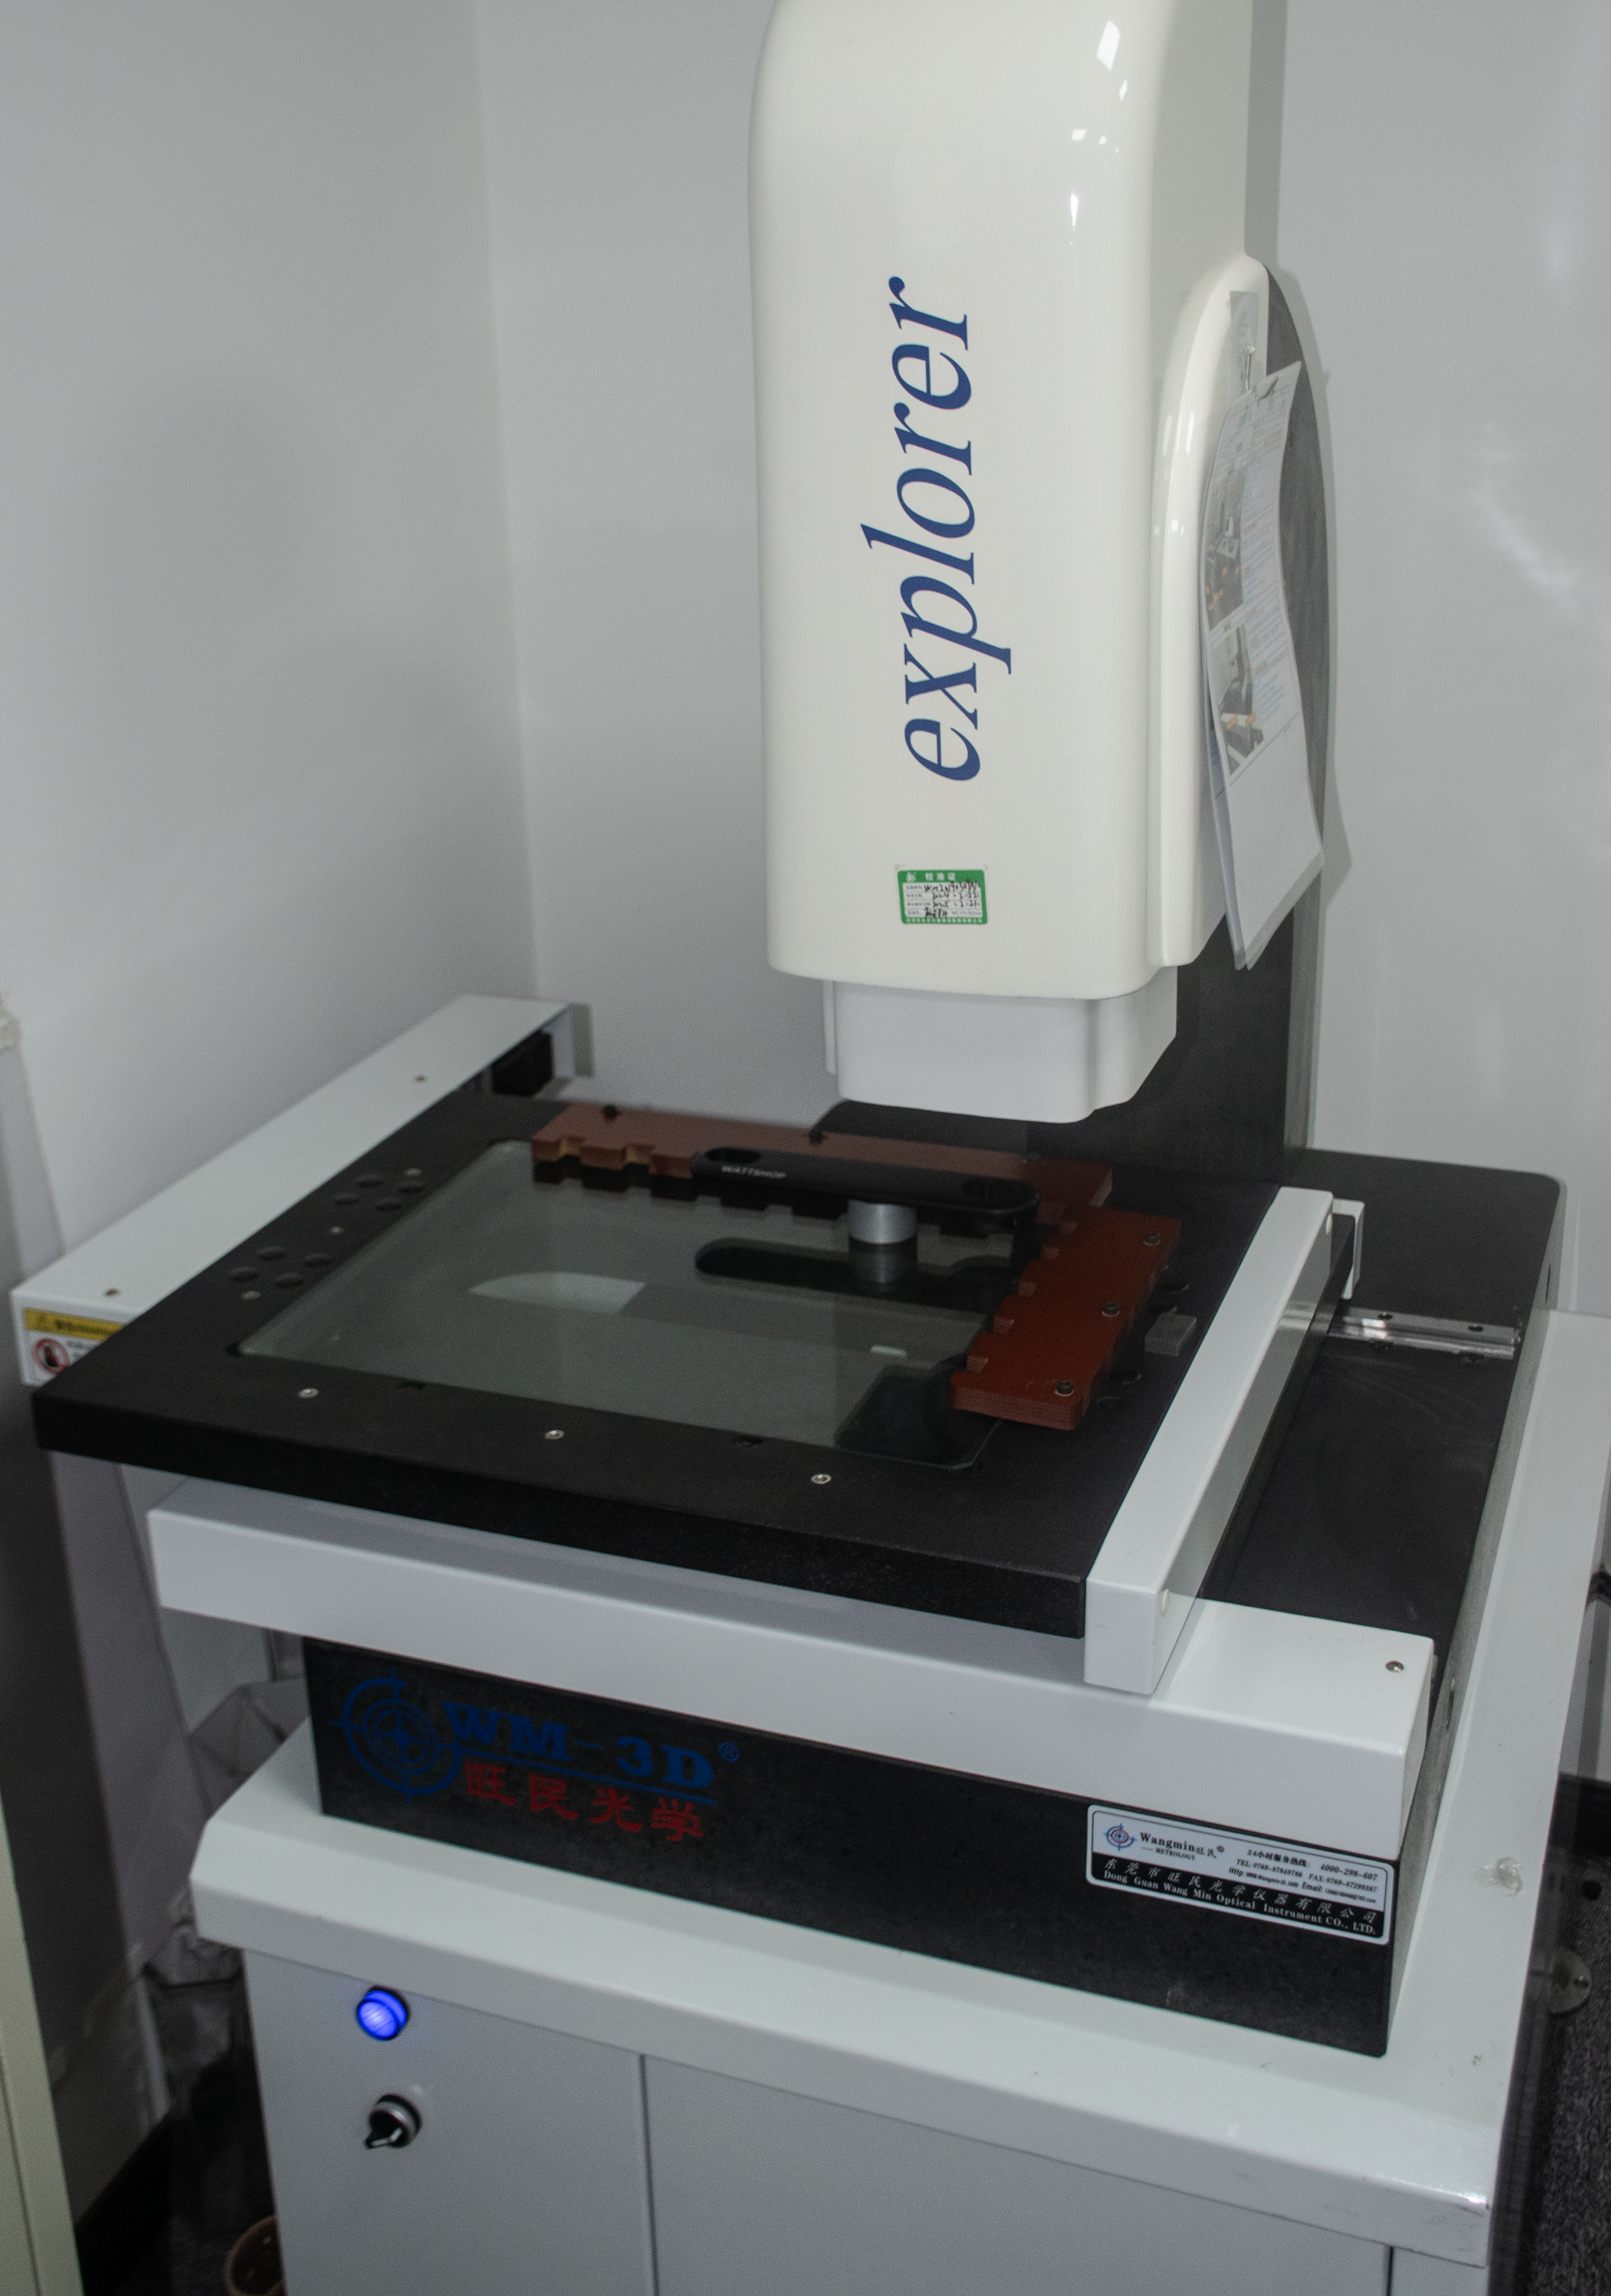 Inspección e inspección del proceso de prensado de metalurgia de polvos metálicos.